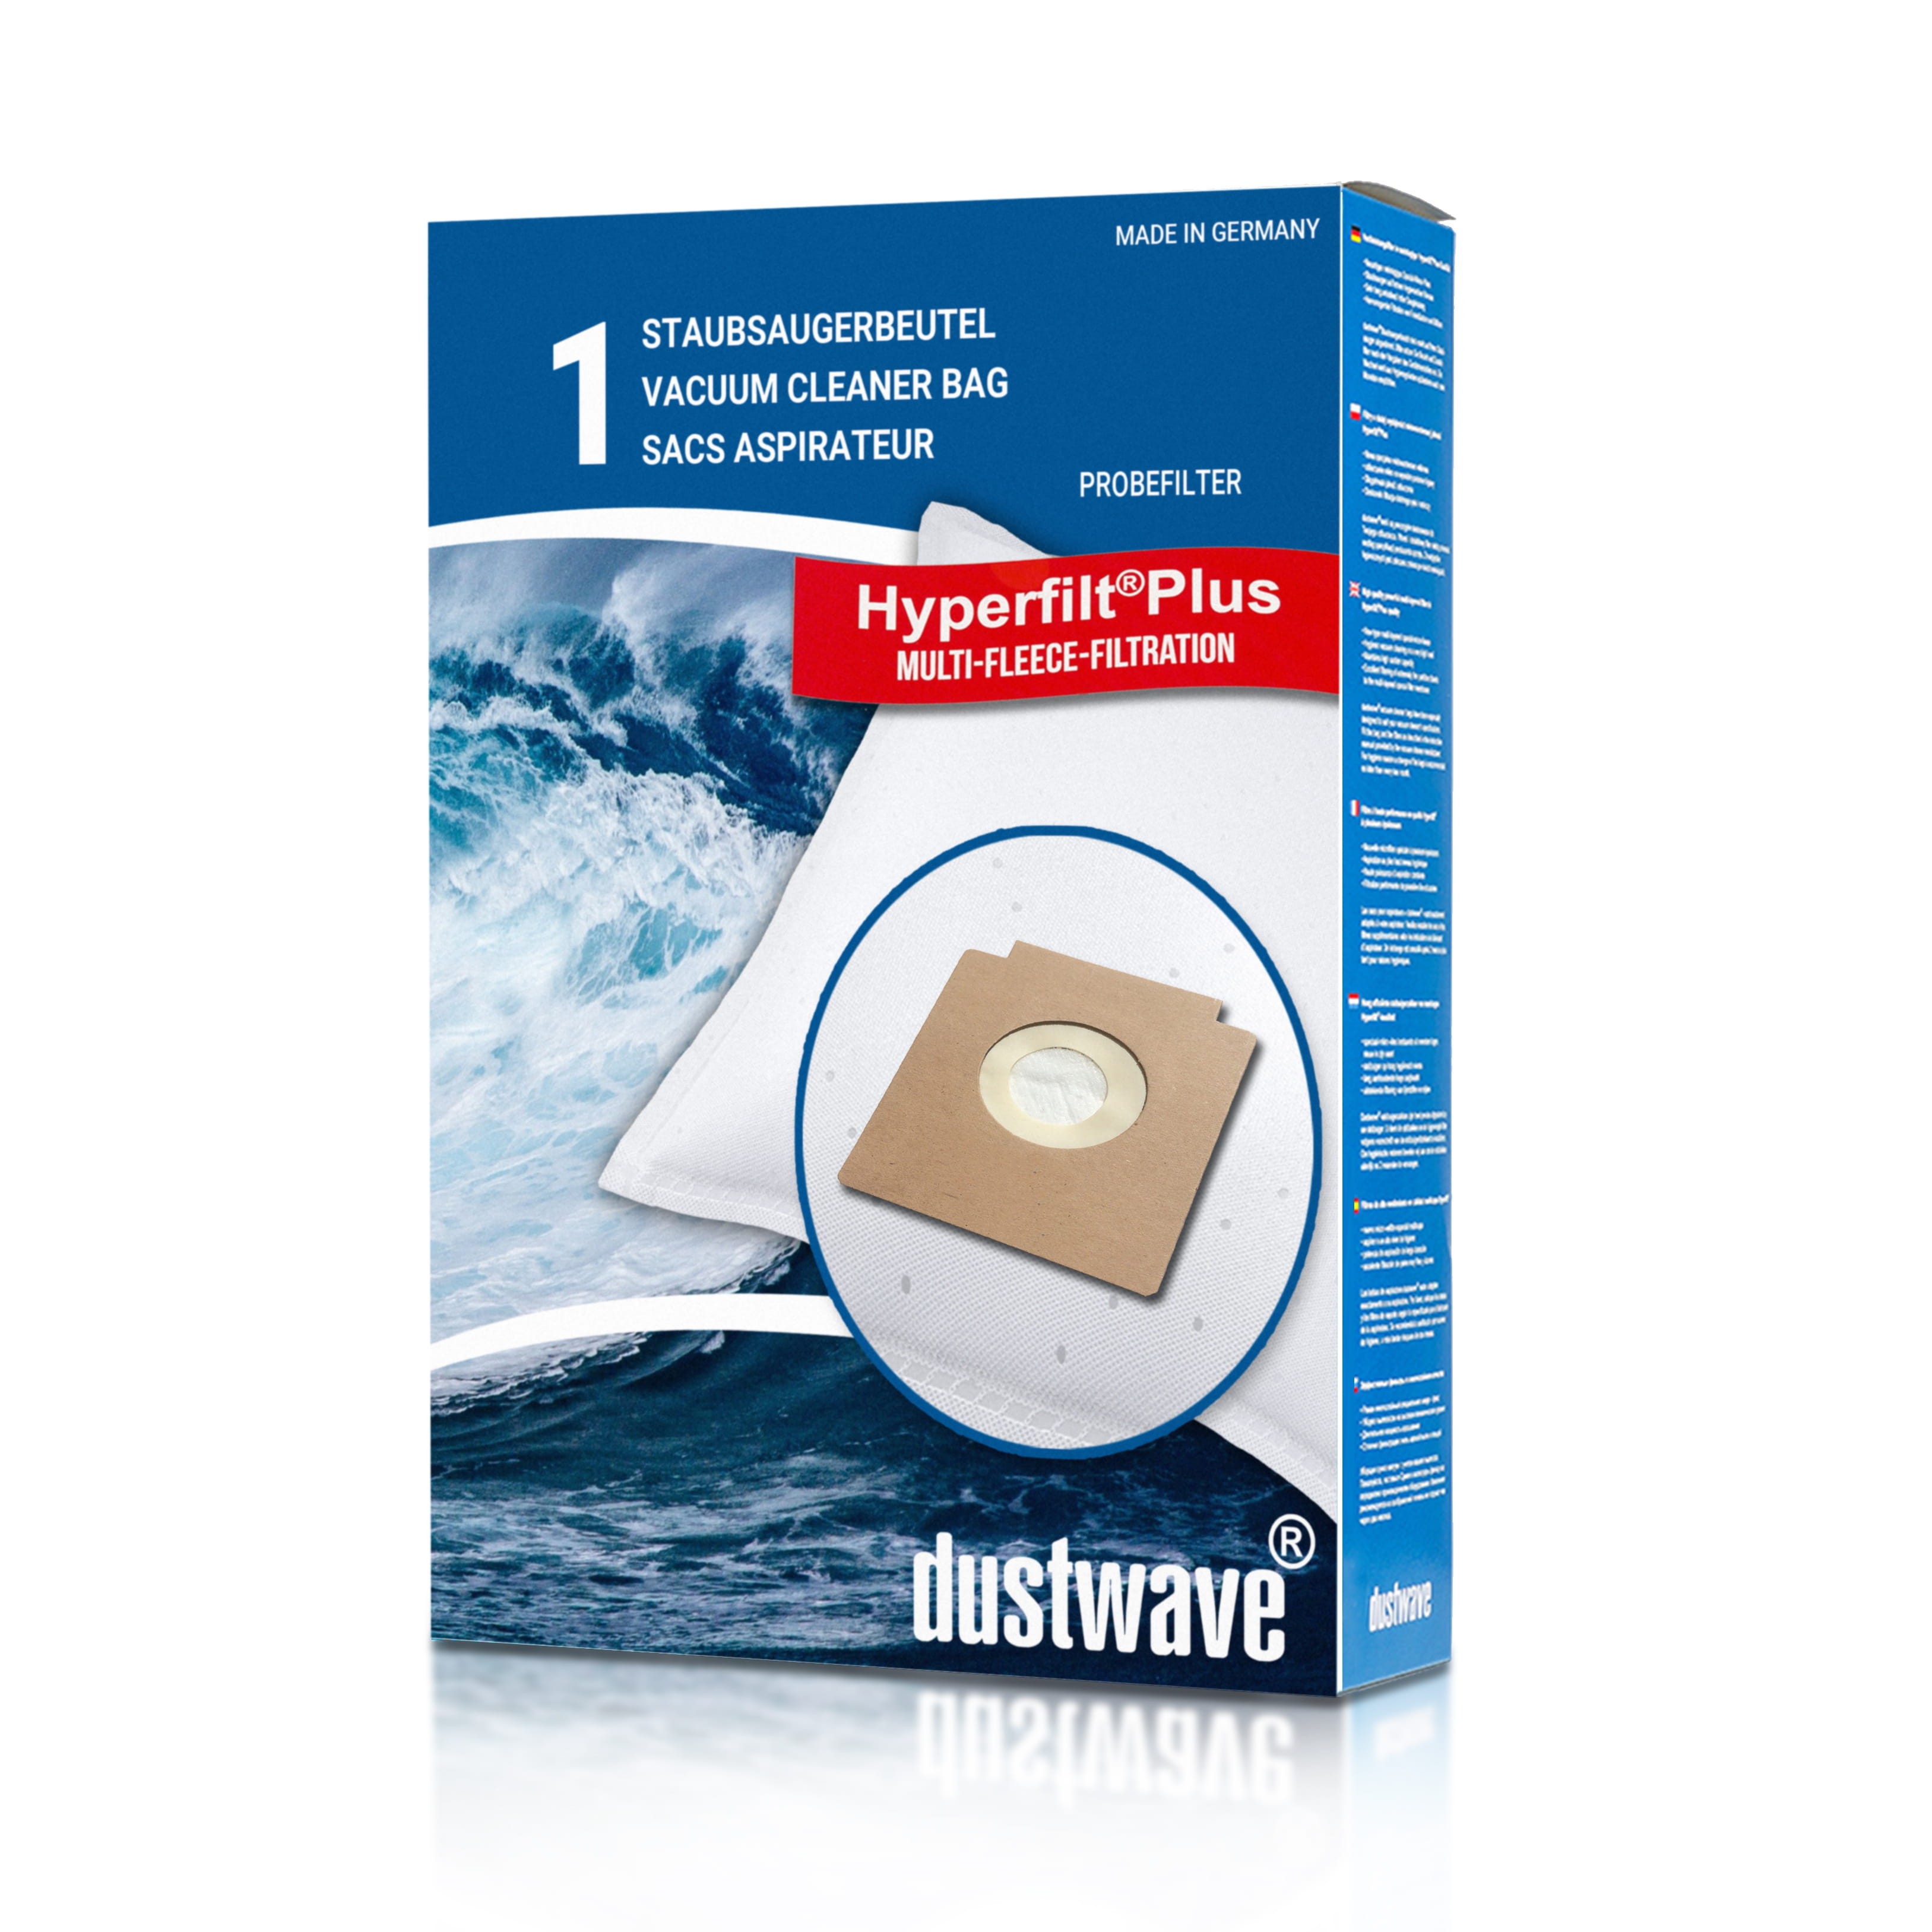 Dustwave® 1 Staubsaugerbeutel für Bomann 1400 - hocheffizient mit Hygieneverschluss - Made in Germany